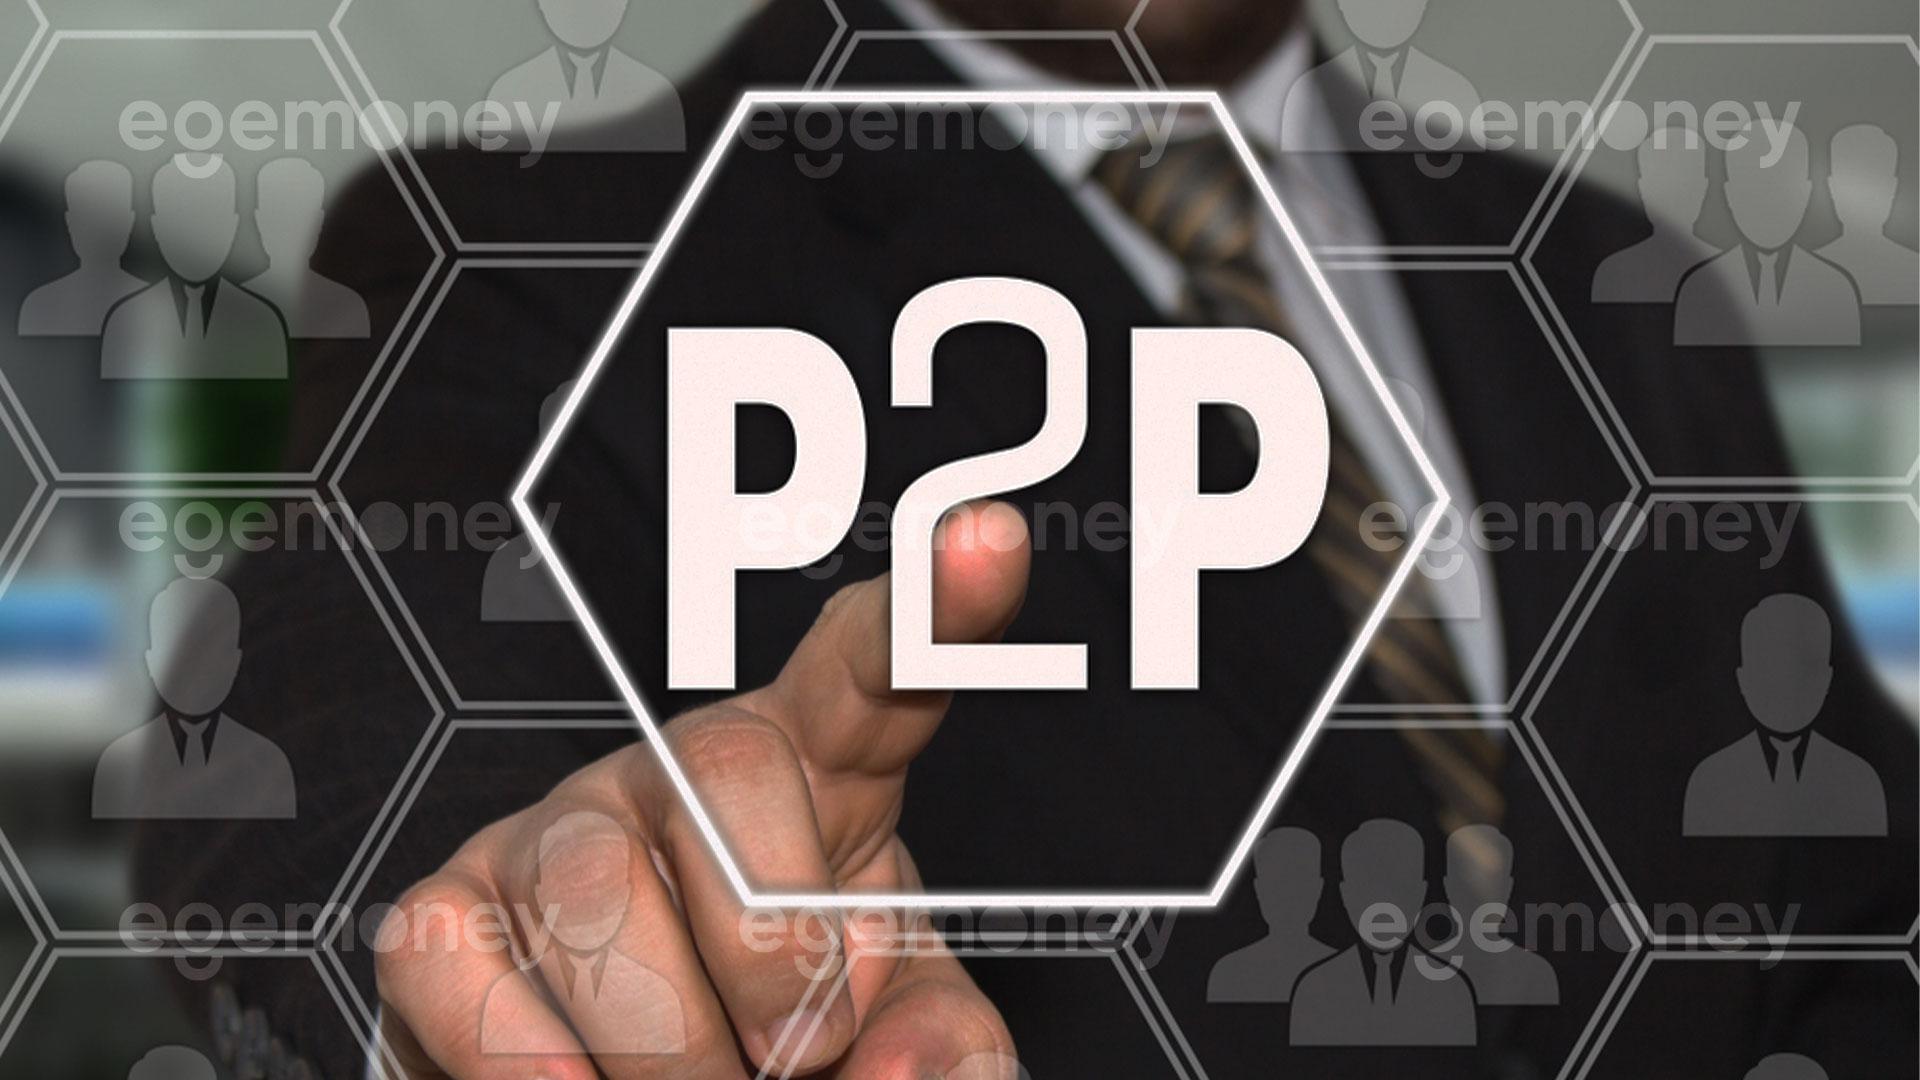 EgeMoney P2P Piyasası Nedir?